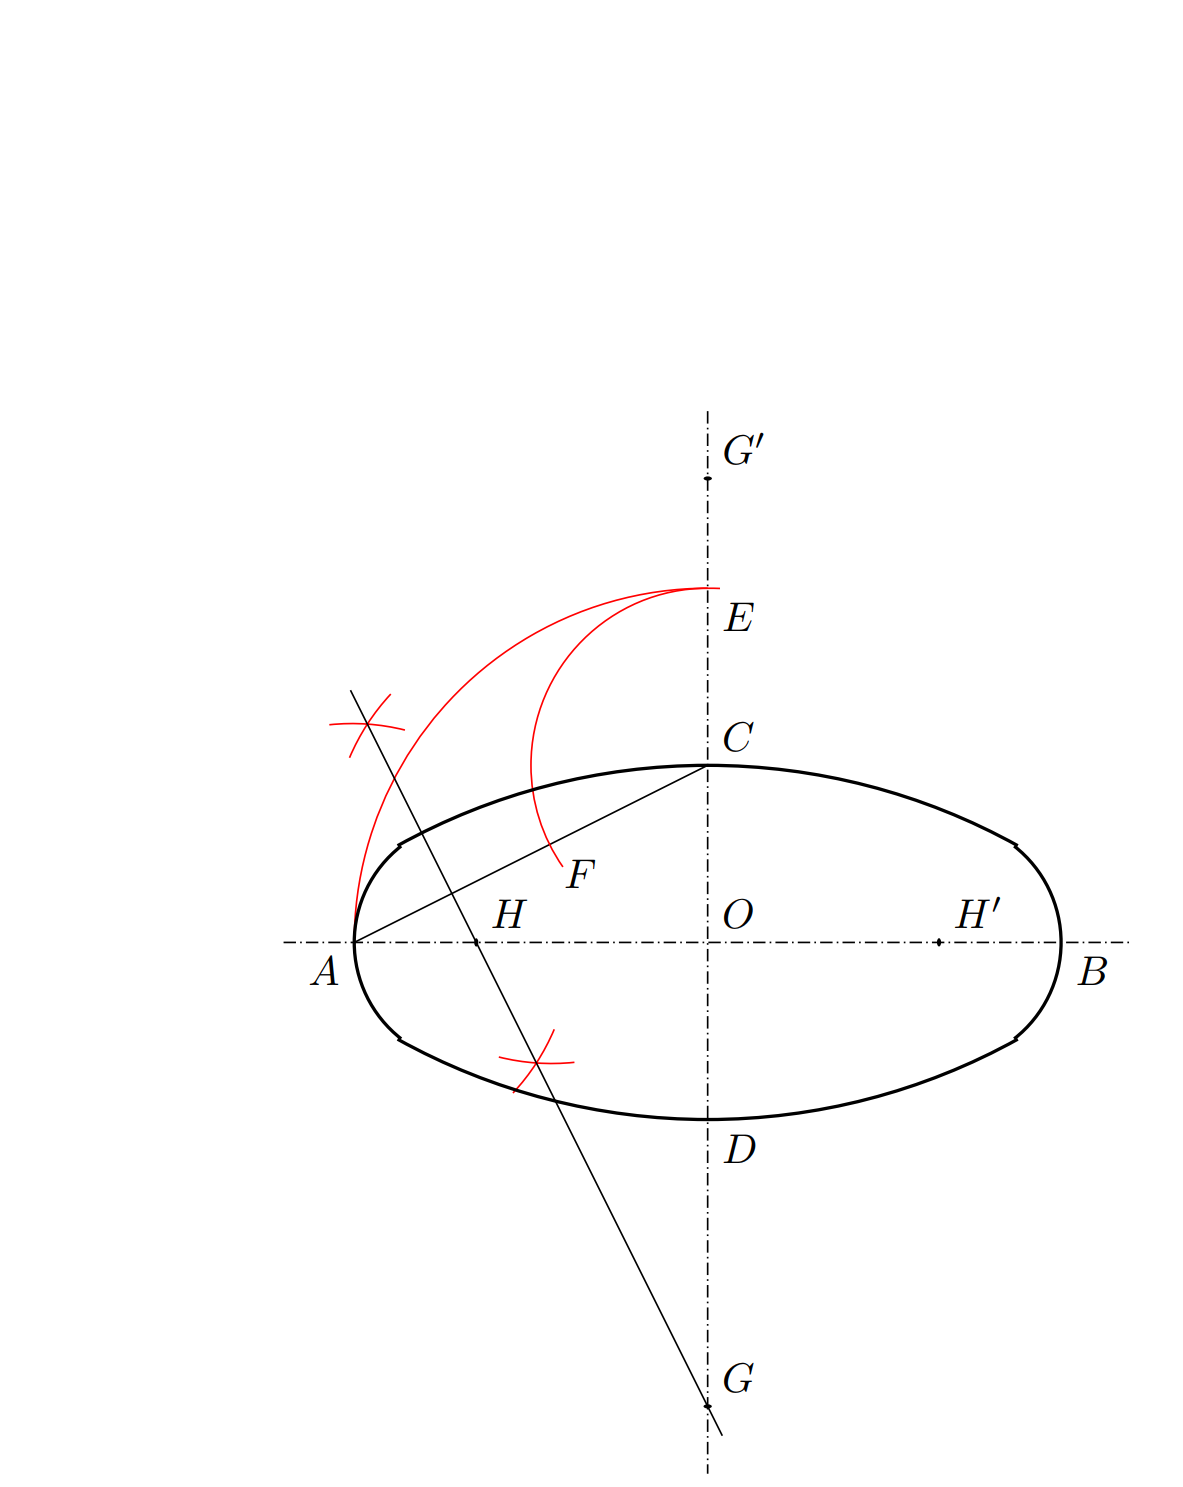 tikz绘图示例——尺规作图: 椭圆的近似画法